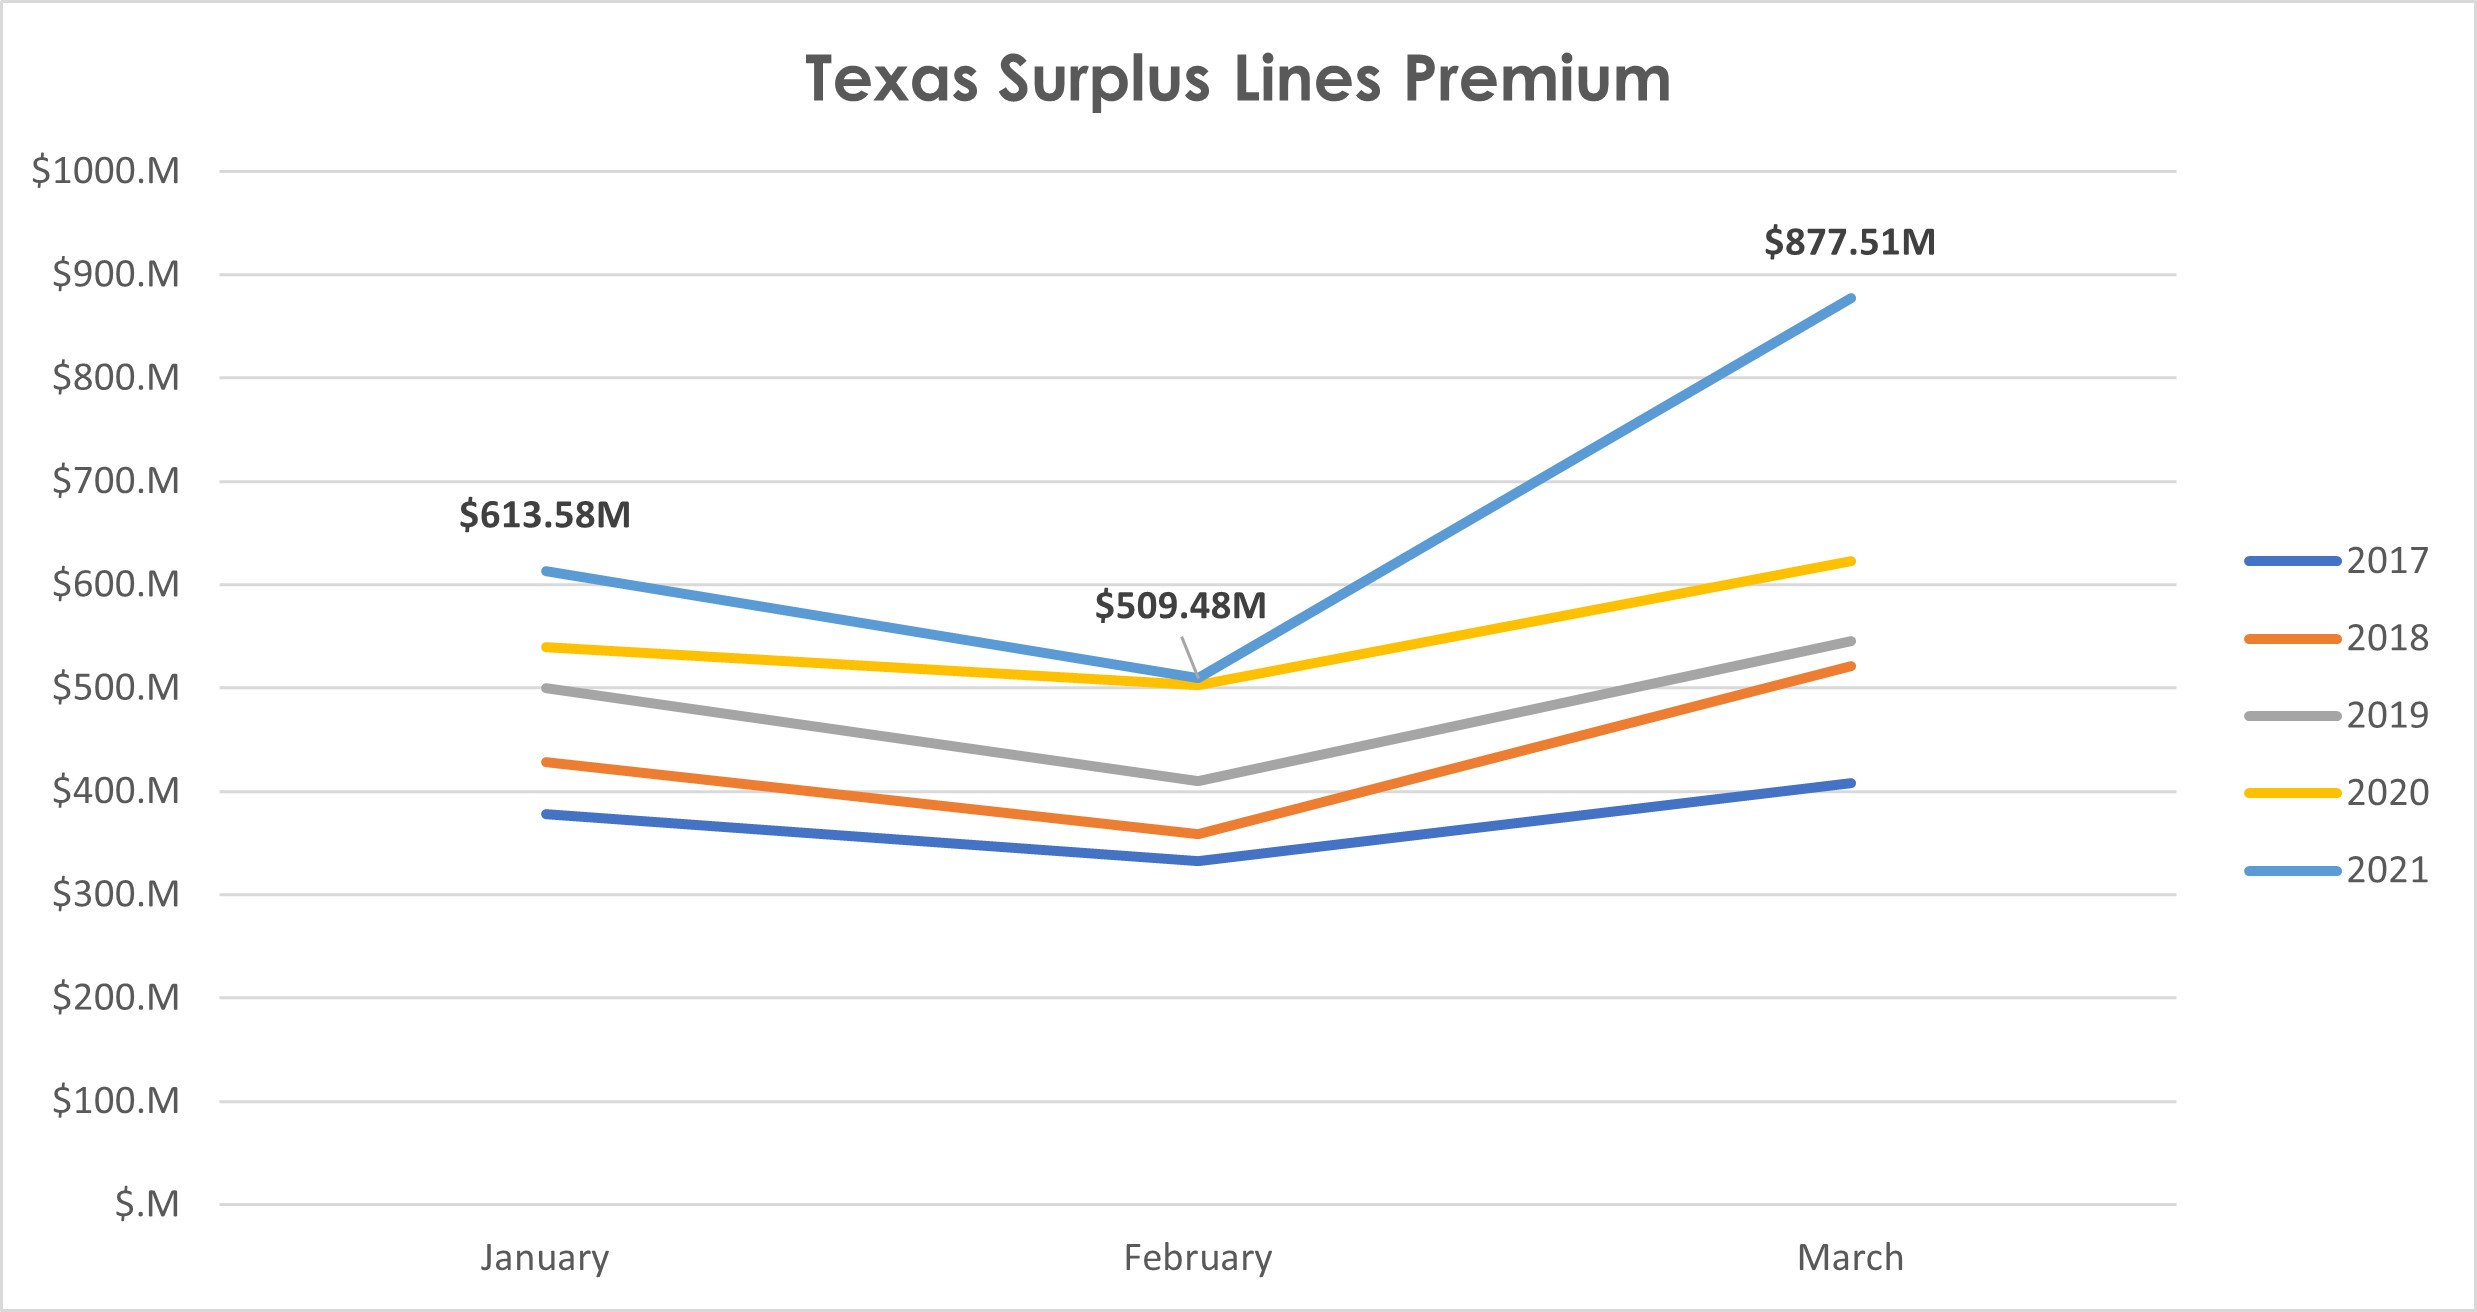 Texas Surplus Lines Premium